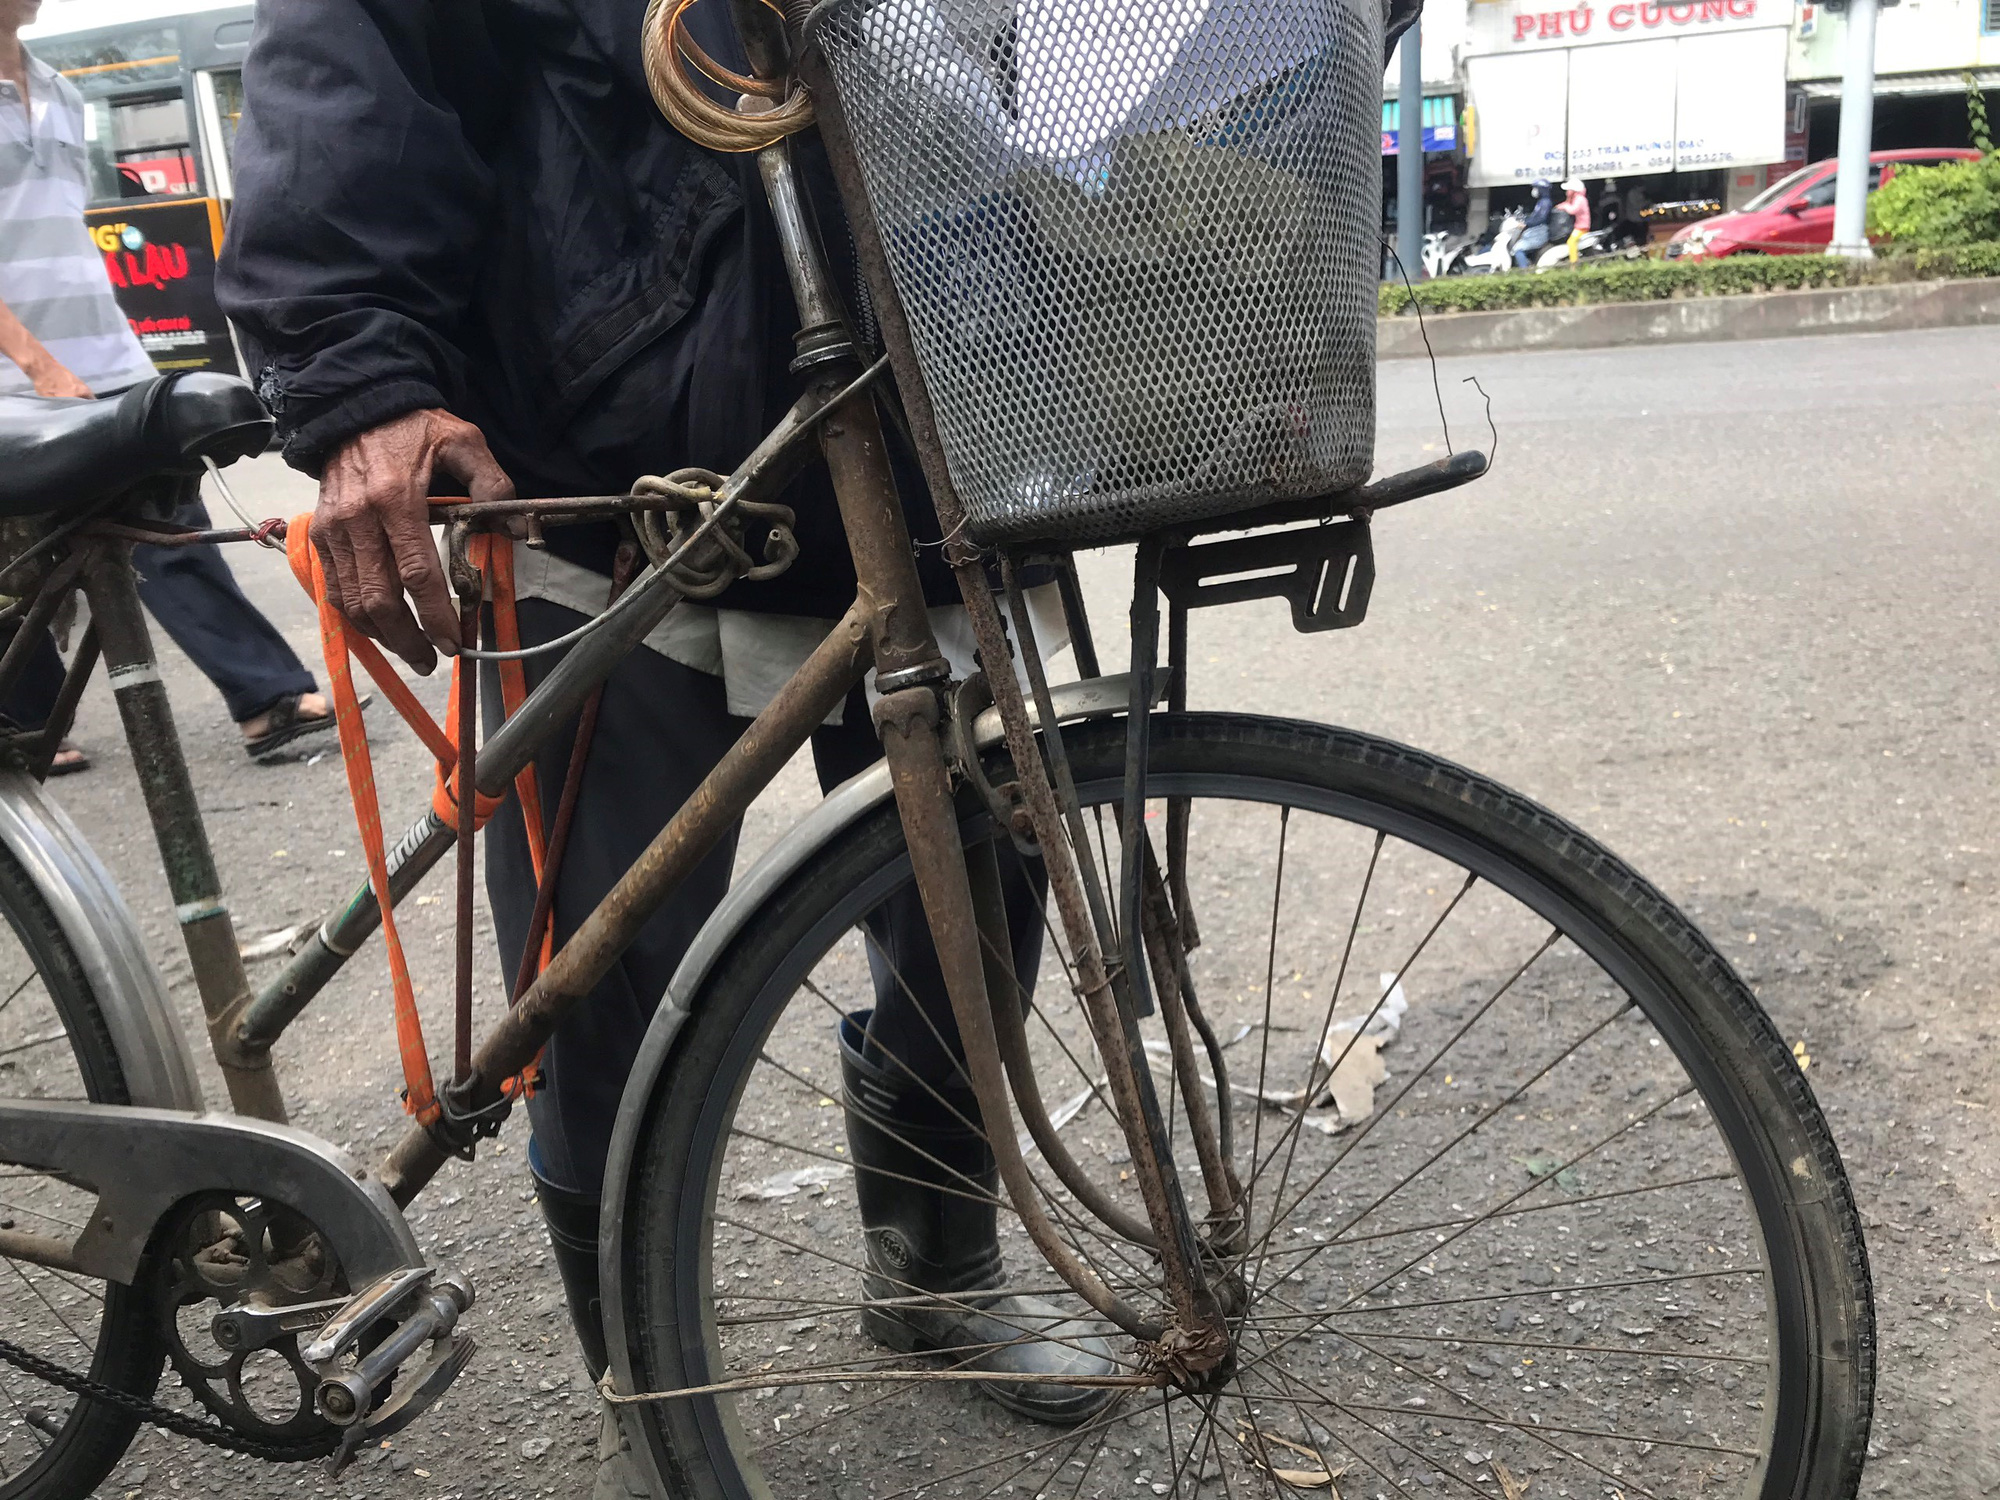 Cửa mặt hàng sửa chữa thay thế xe đạp điện năng lượng điện đáng tin tưởng bên trên Hà Nội